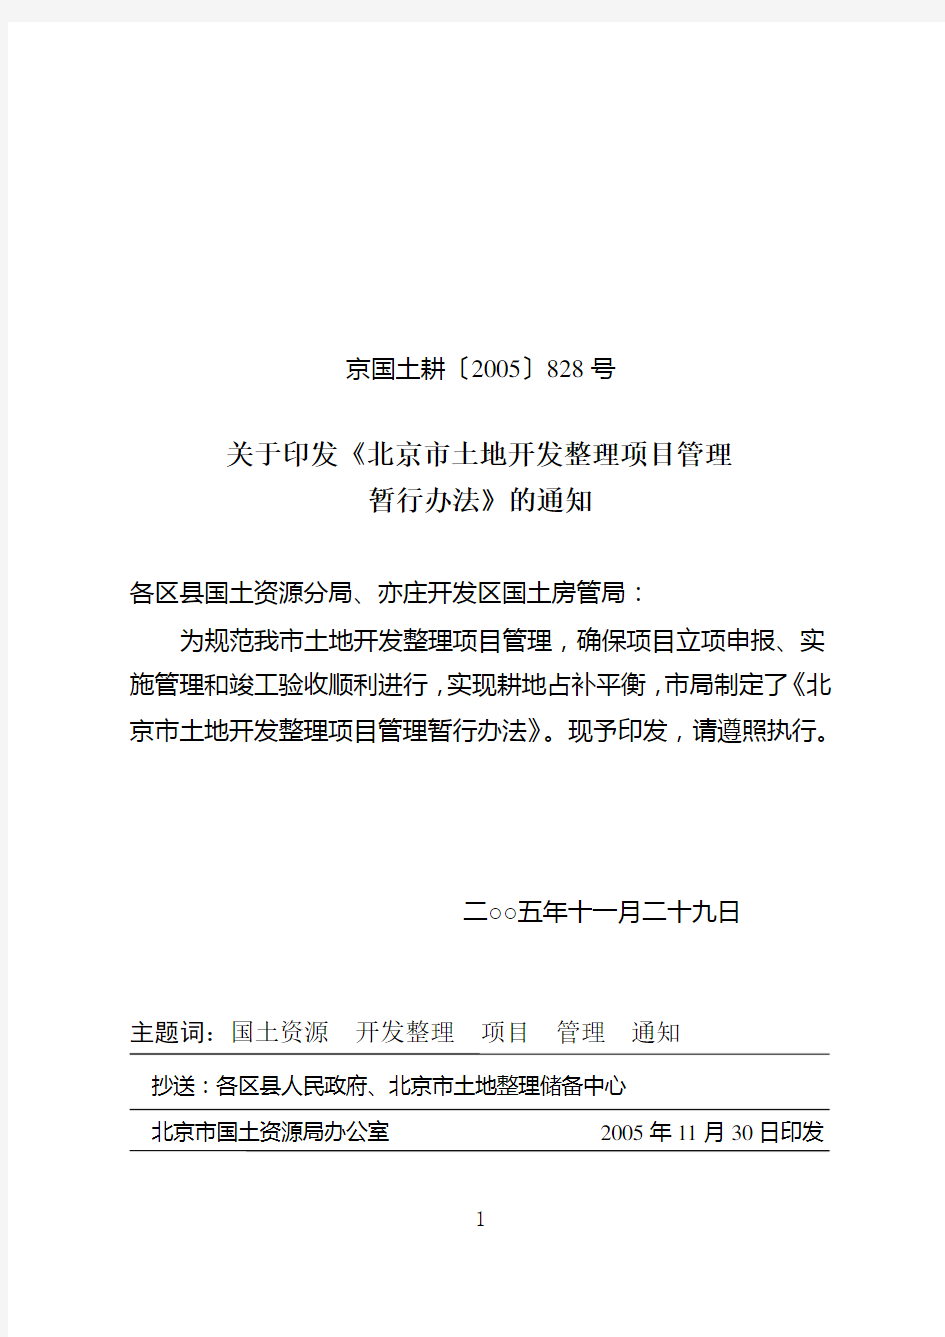 关于印发《北京市土地开发整理项目管理暂行办法》的通知